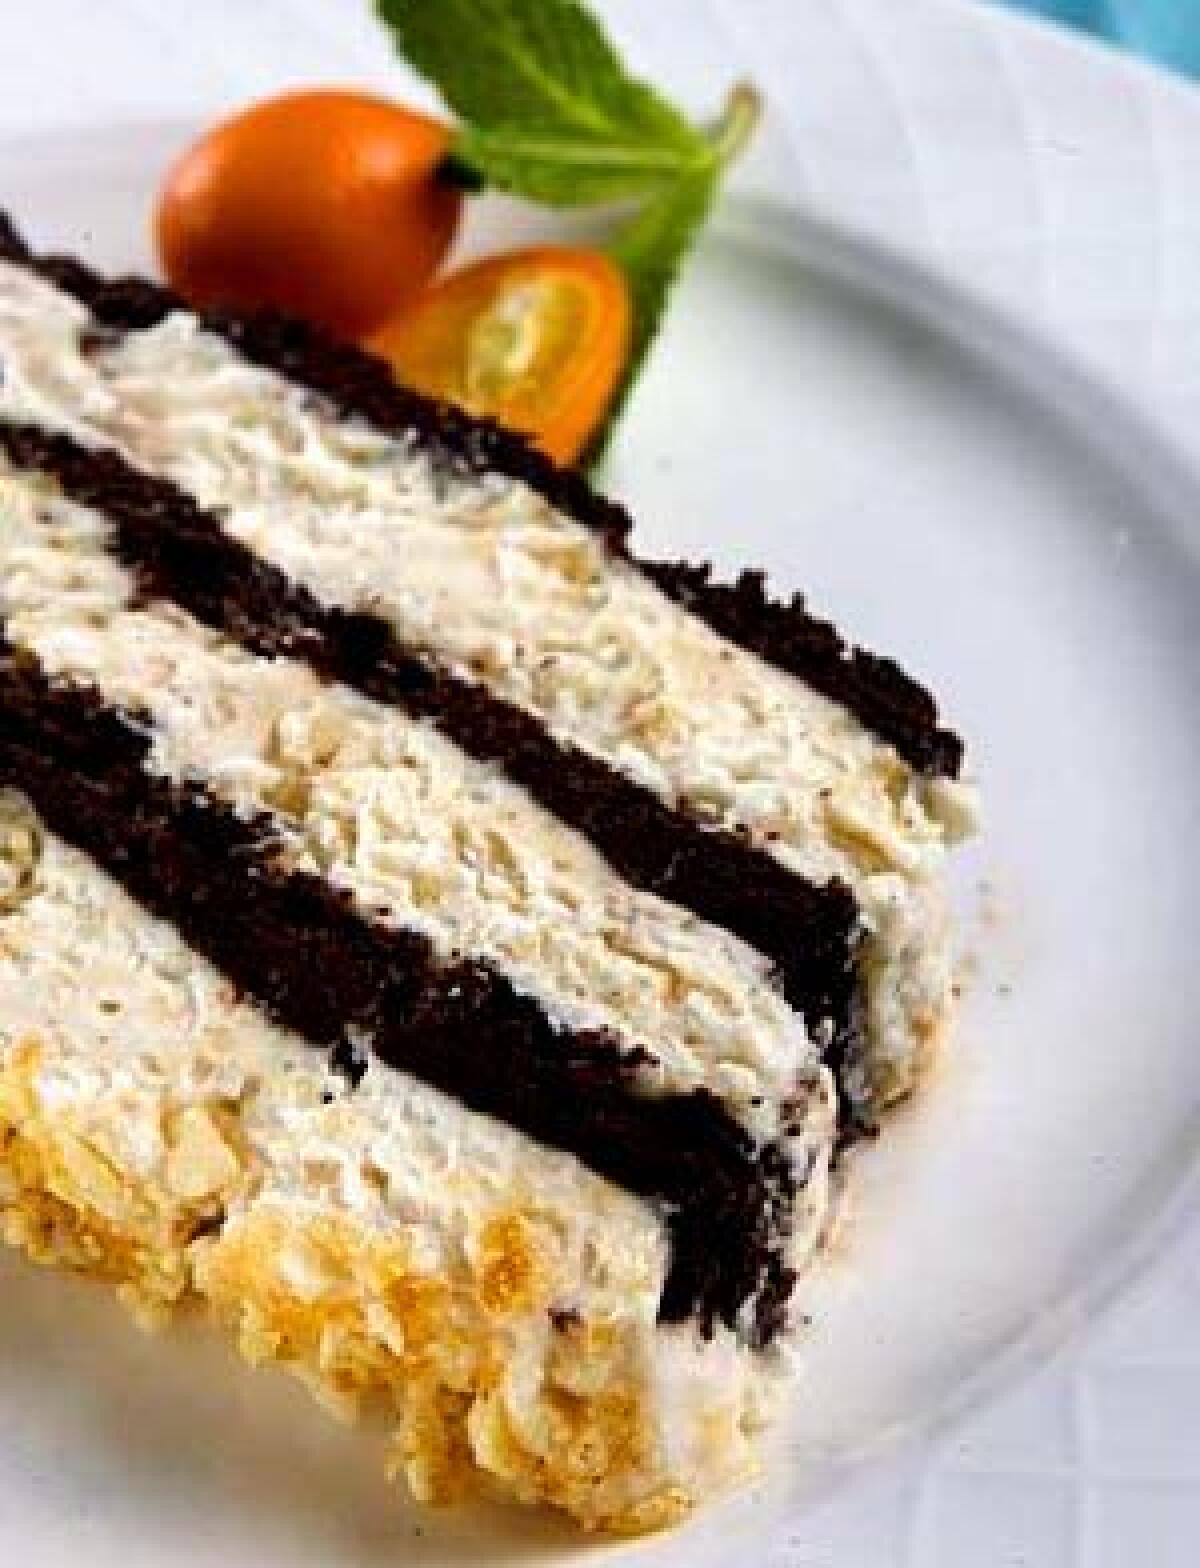 LOVELY LAYERS: Chocolate cake with hazelnut semifreddo